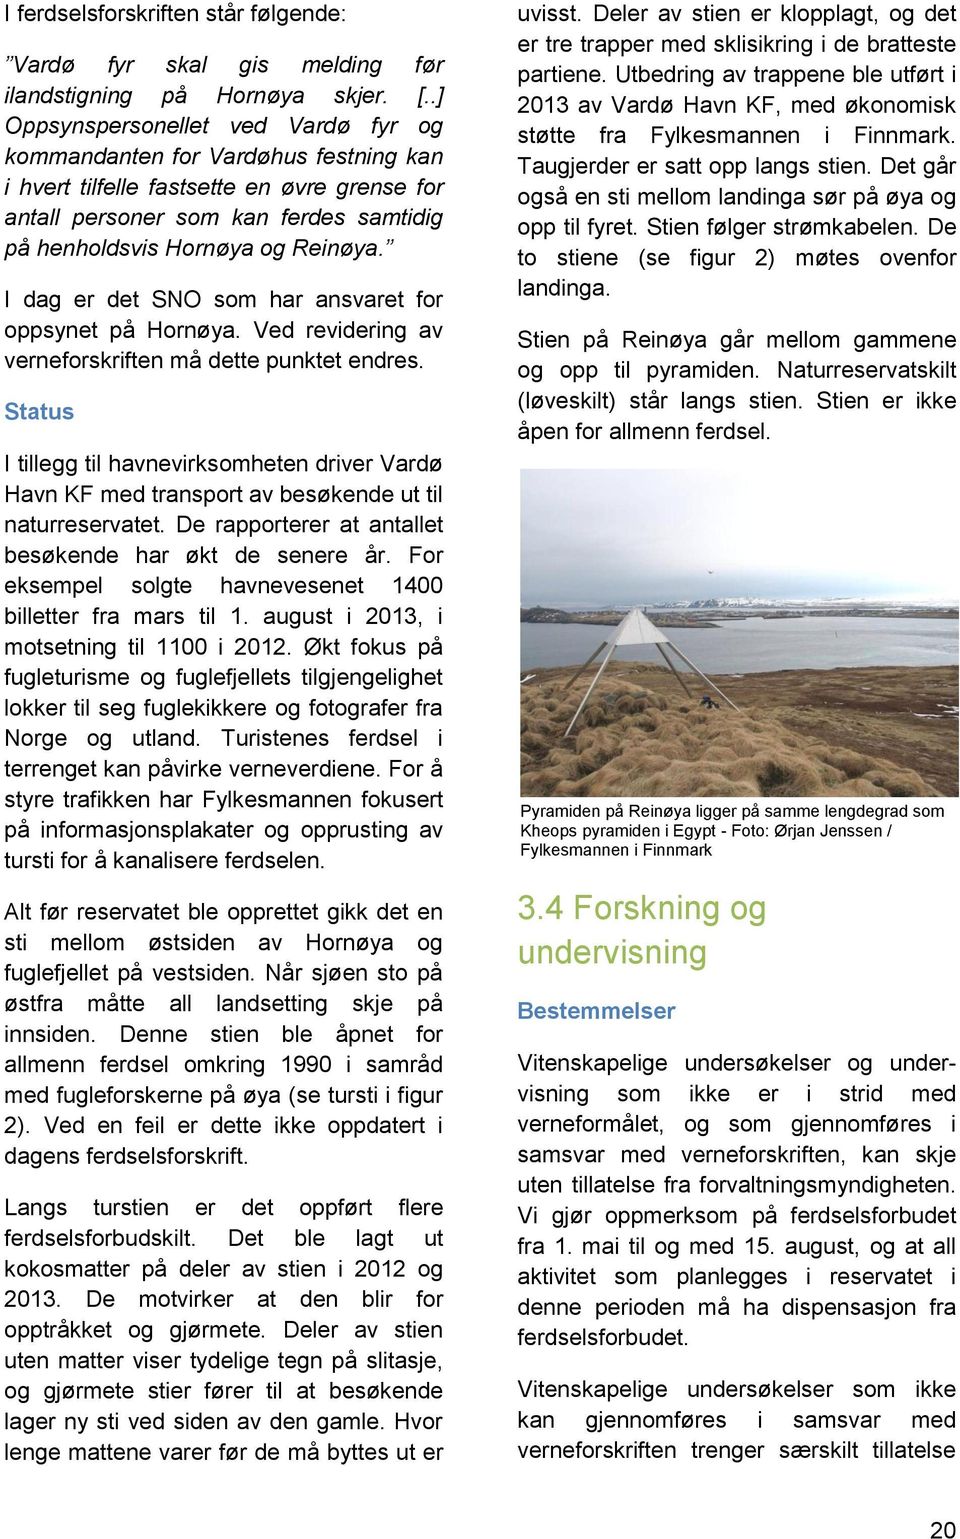 I dag er det SNO som har ansvaret for oppsynet på Hornøya. Ved revidering av verneforskriften må dette punktet endres.